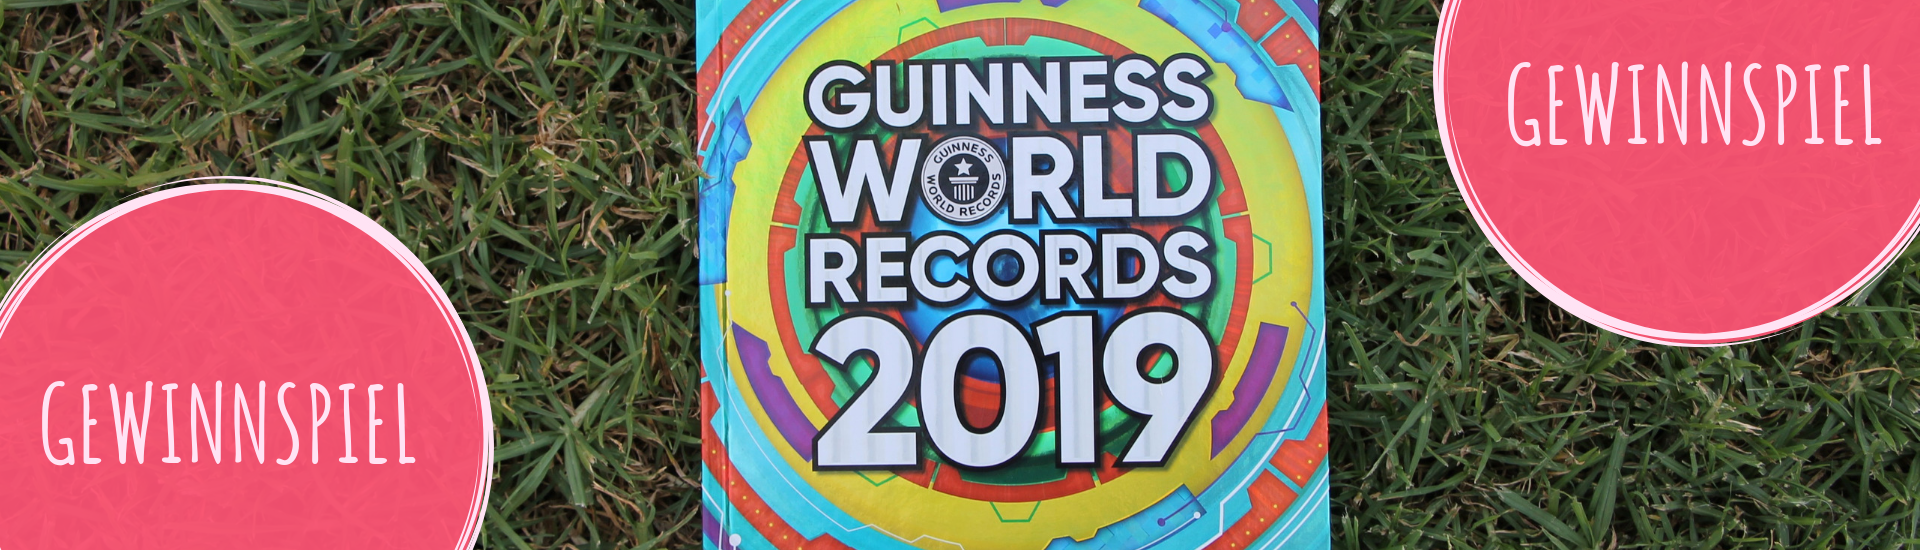 Gewinnspiel Guinness World Records 2019 Buch